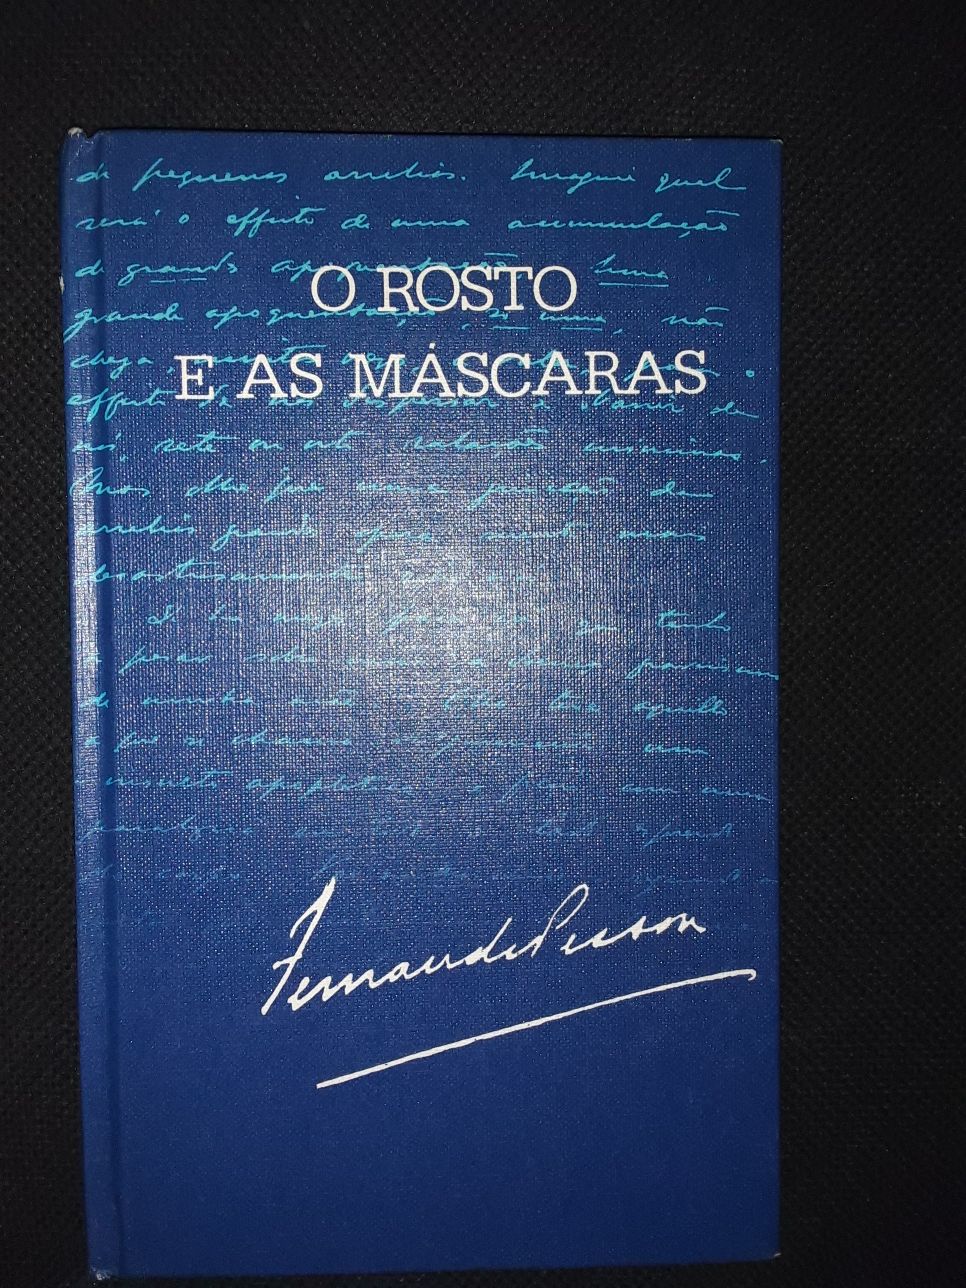 O rosto e as mascaras Fernando Pessoa